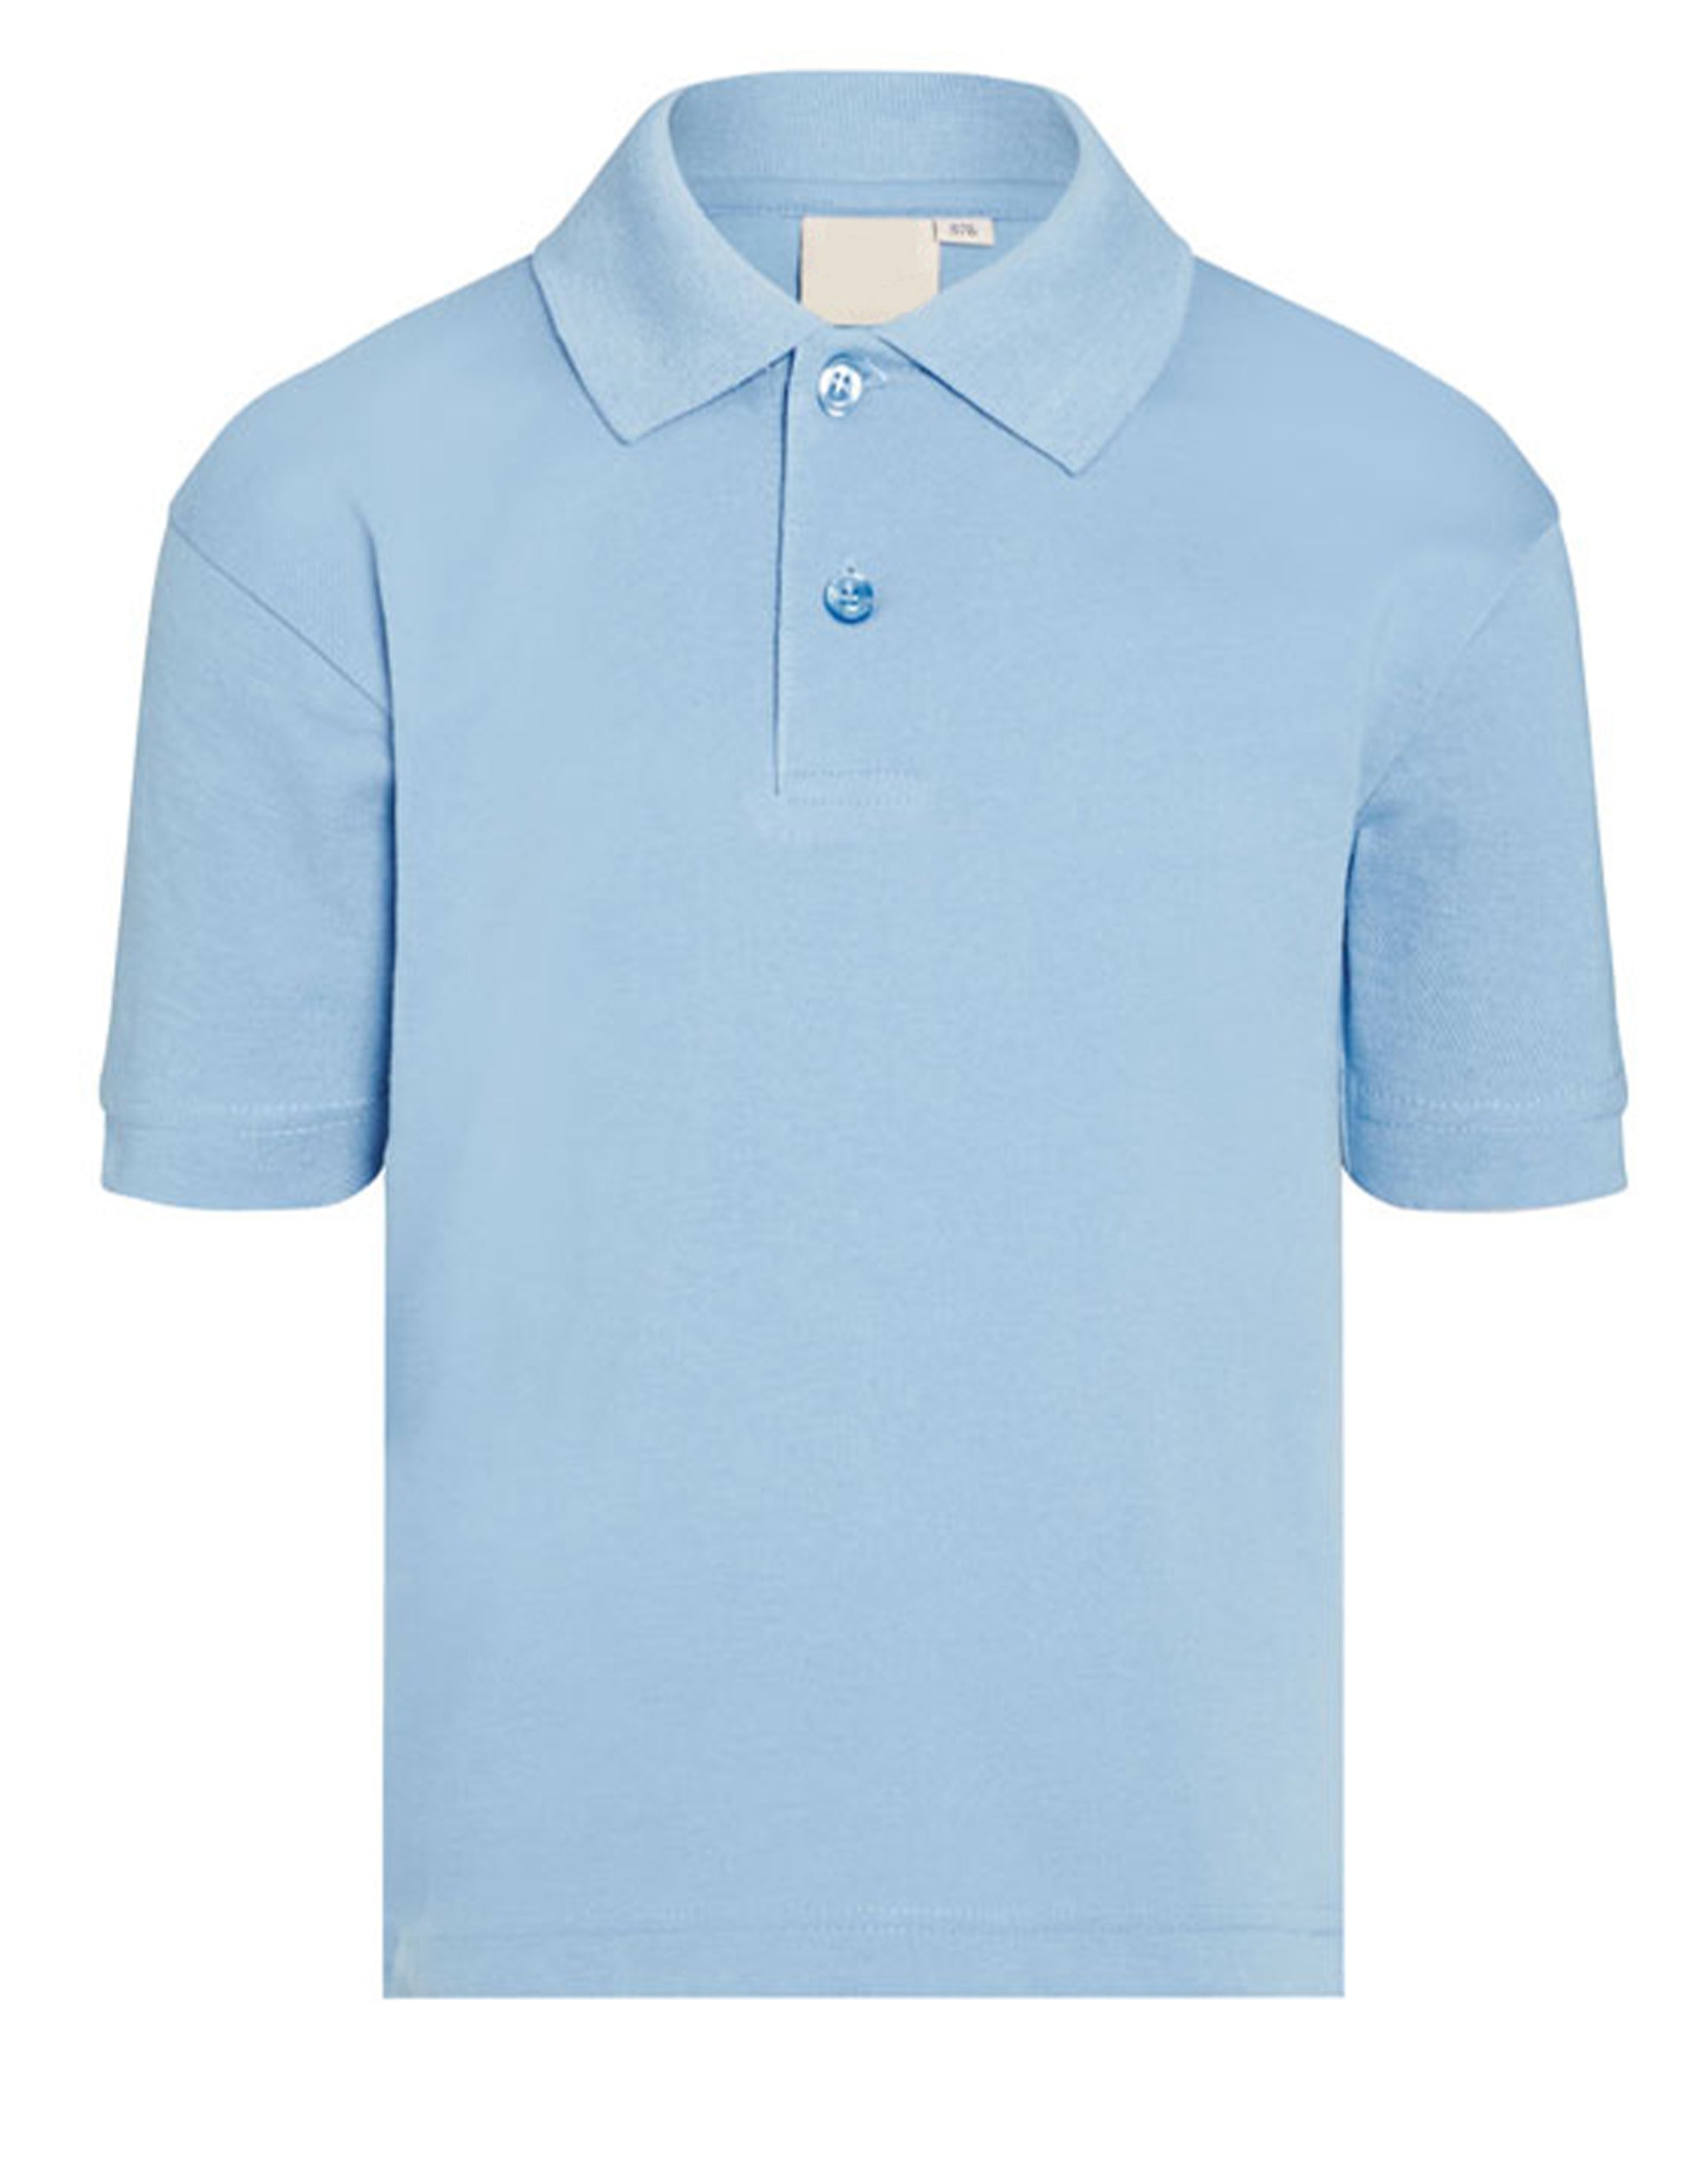 Pale Blue - Polo Shirt - School Uniform Shop